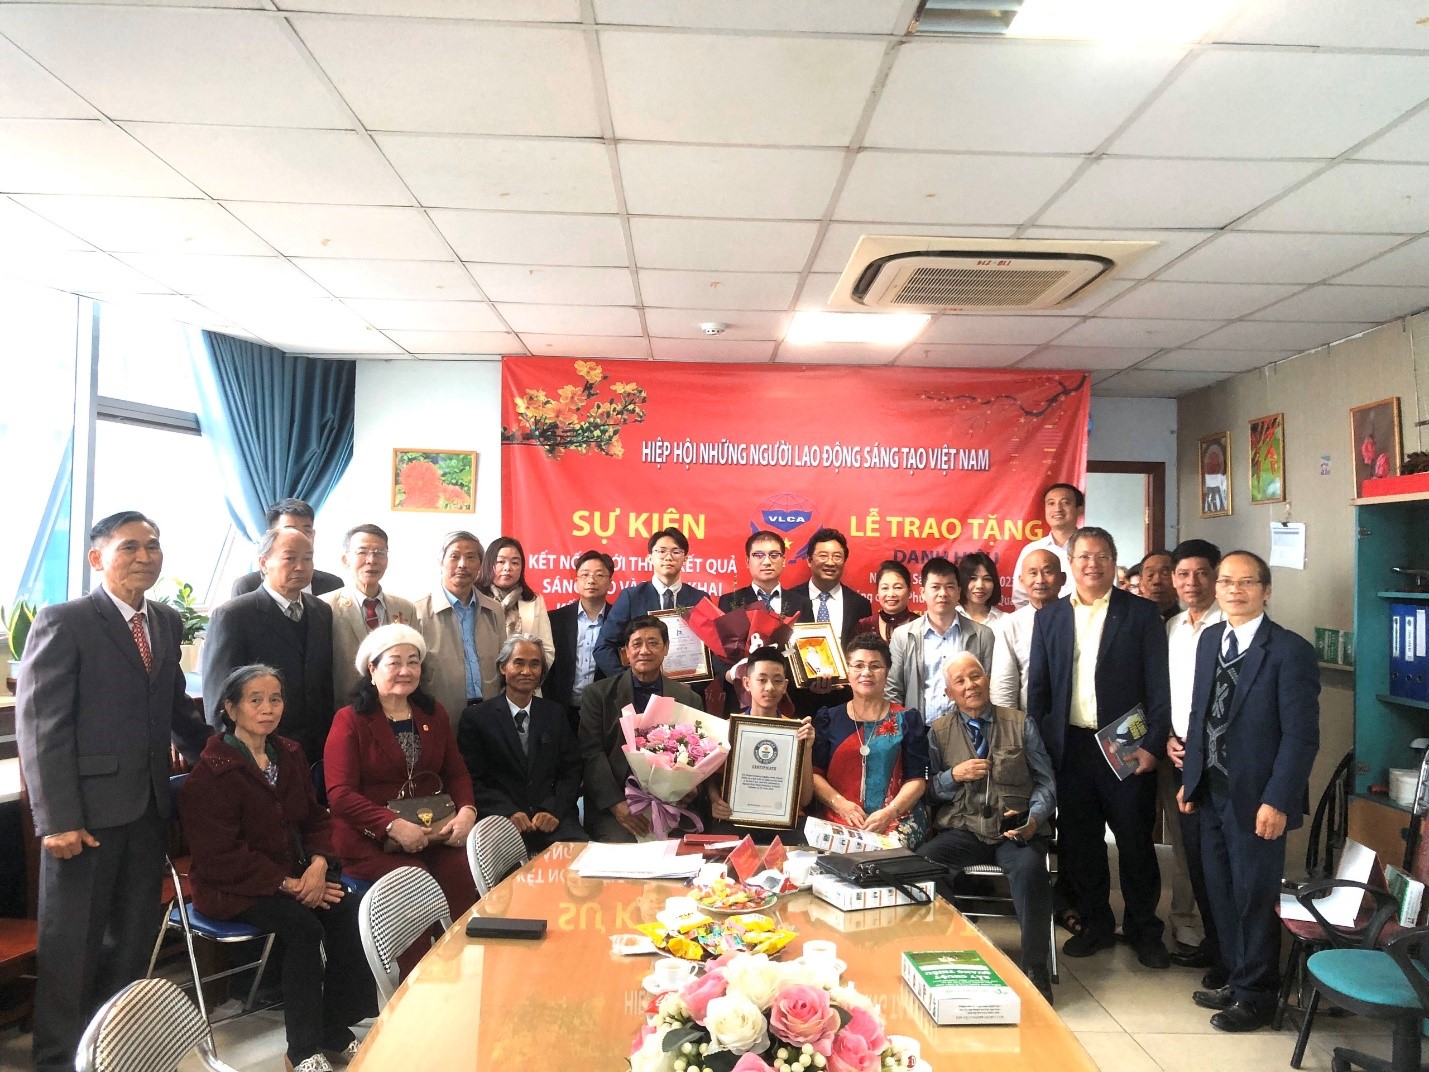 Hiệp hội Những người lao động sáng tạo Việt Nam tổ chức hội nghị Kết nối, giới thiệu kết quả sáng tạo và lễ trao Danh hiệu Ngôi sao sáng chế IPSTAR; Bằng kỉ lục thế giới GUINNESS - 5